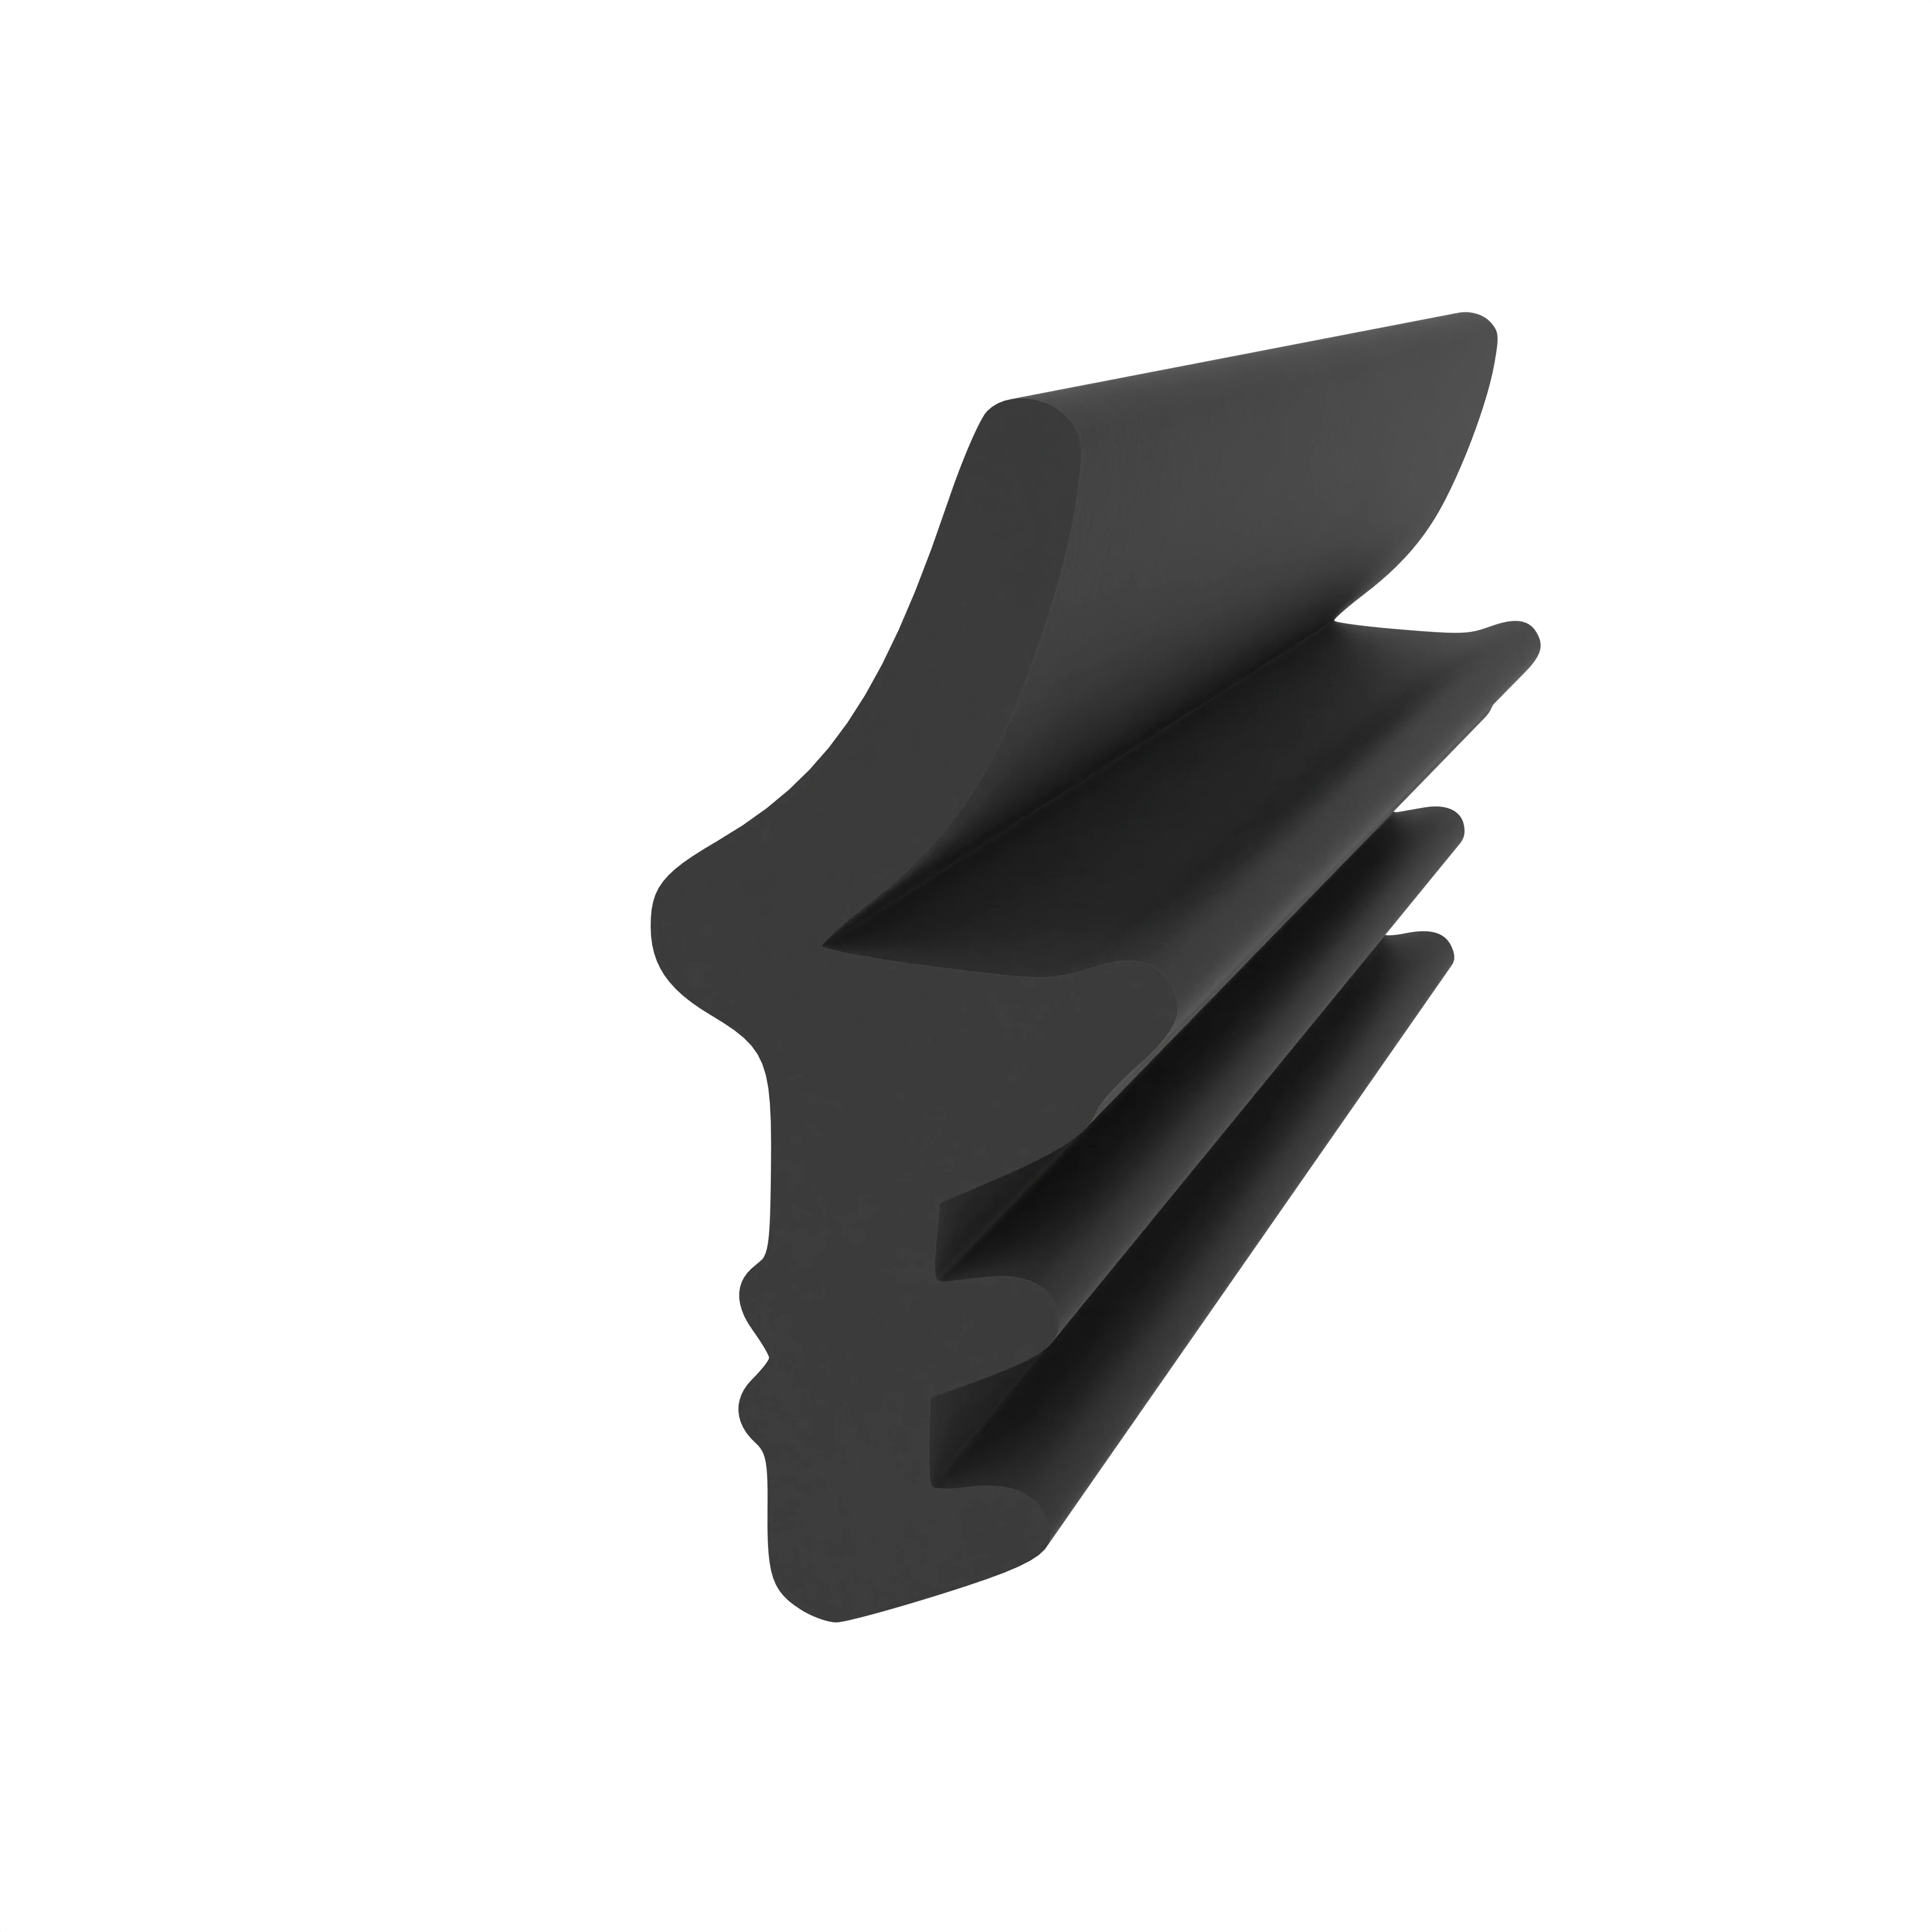 Anschlagdichtung mit Lippe und profiliertem Fuß | 16 mm Höhe | Farbe: schwarz